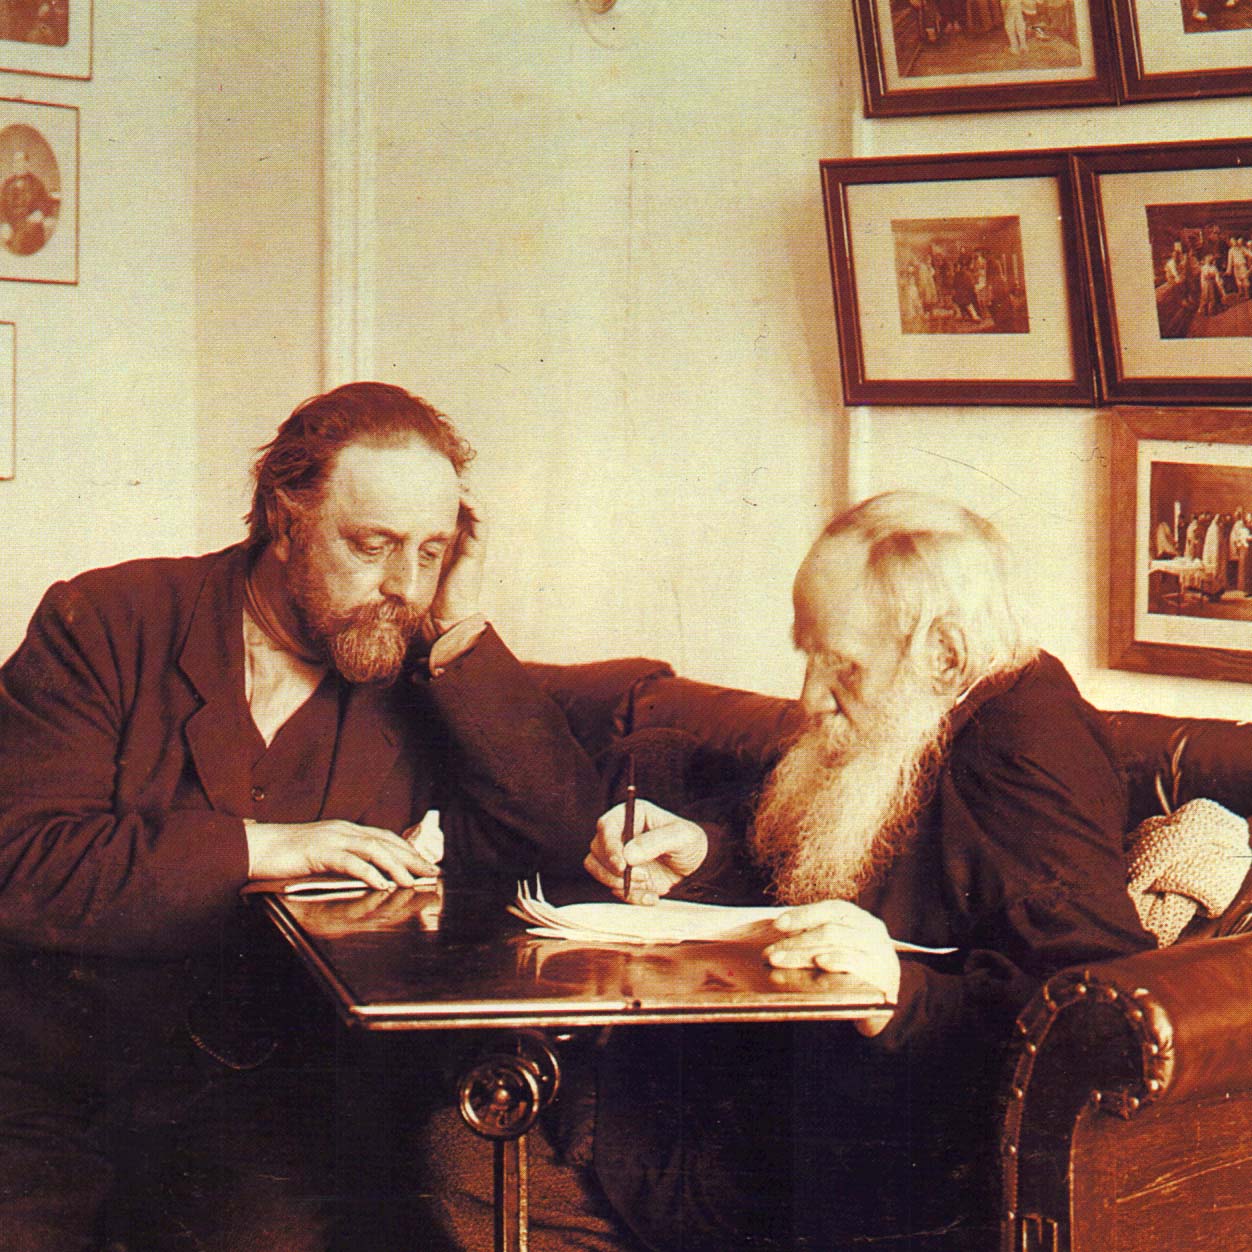 Л.Н. Толстой и В.Г. Чертков в кабинете яснополянского дома. Фотография Т. Тапселя. 1909 г.